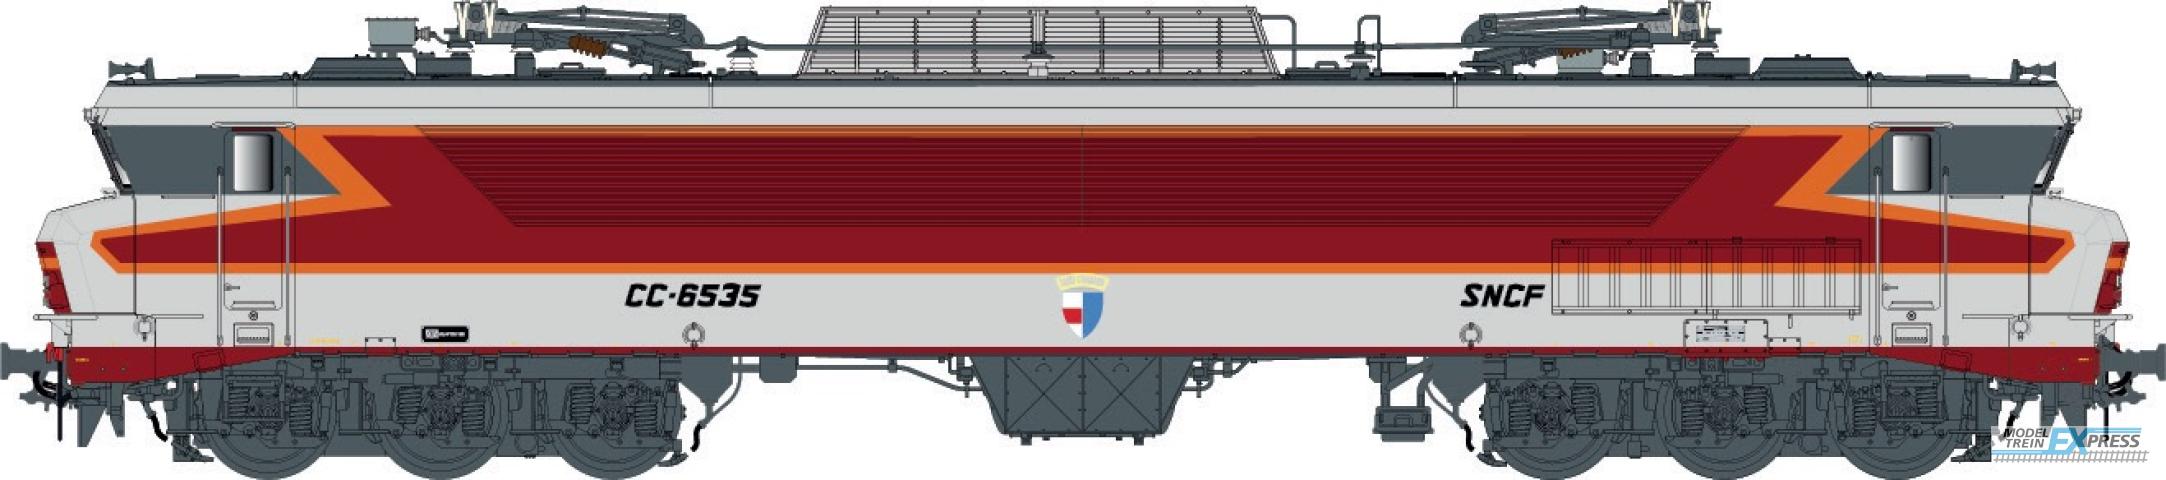 LS Models 10331S CC 6535, metallic gray, ARZENS livery, Lyon Mouche depot, 200 Km/h  /  Ep. IV  /  SNCF  /  HO  /  DC SOUND  /  1 P.